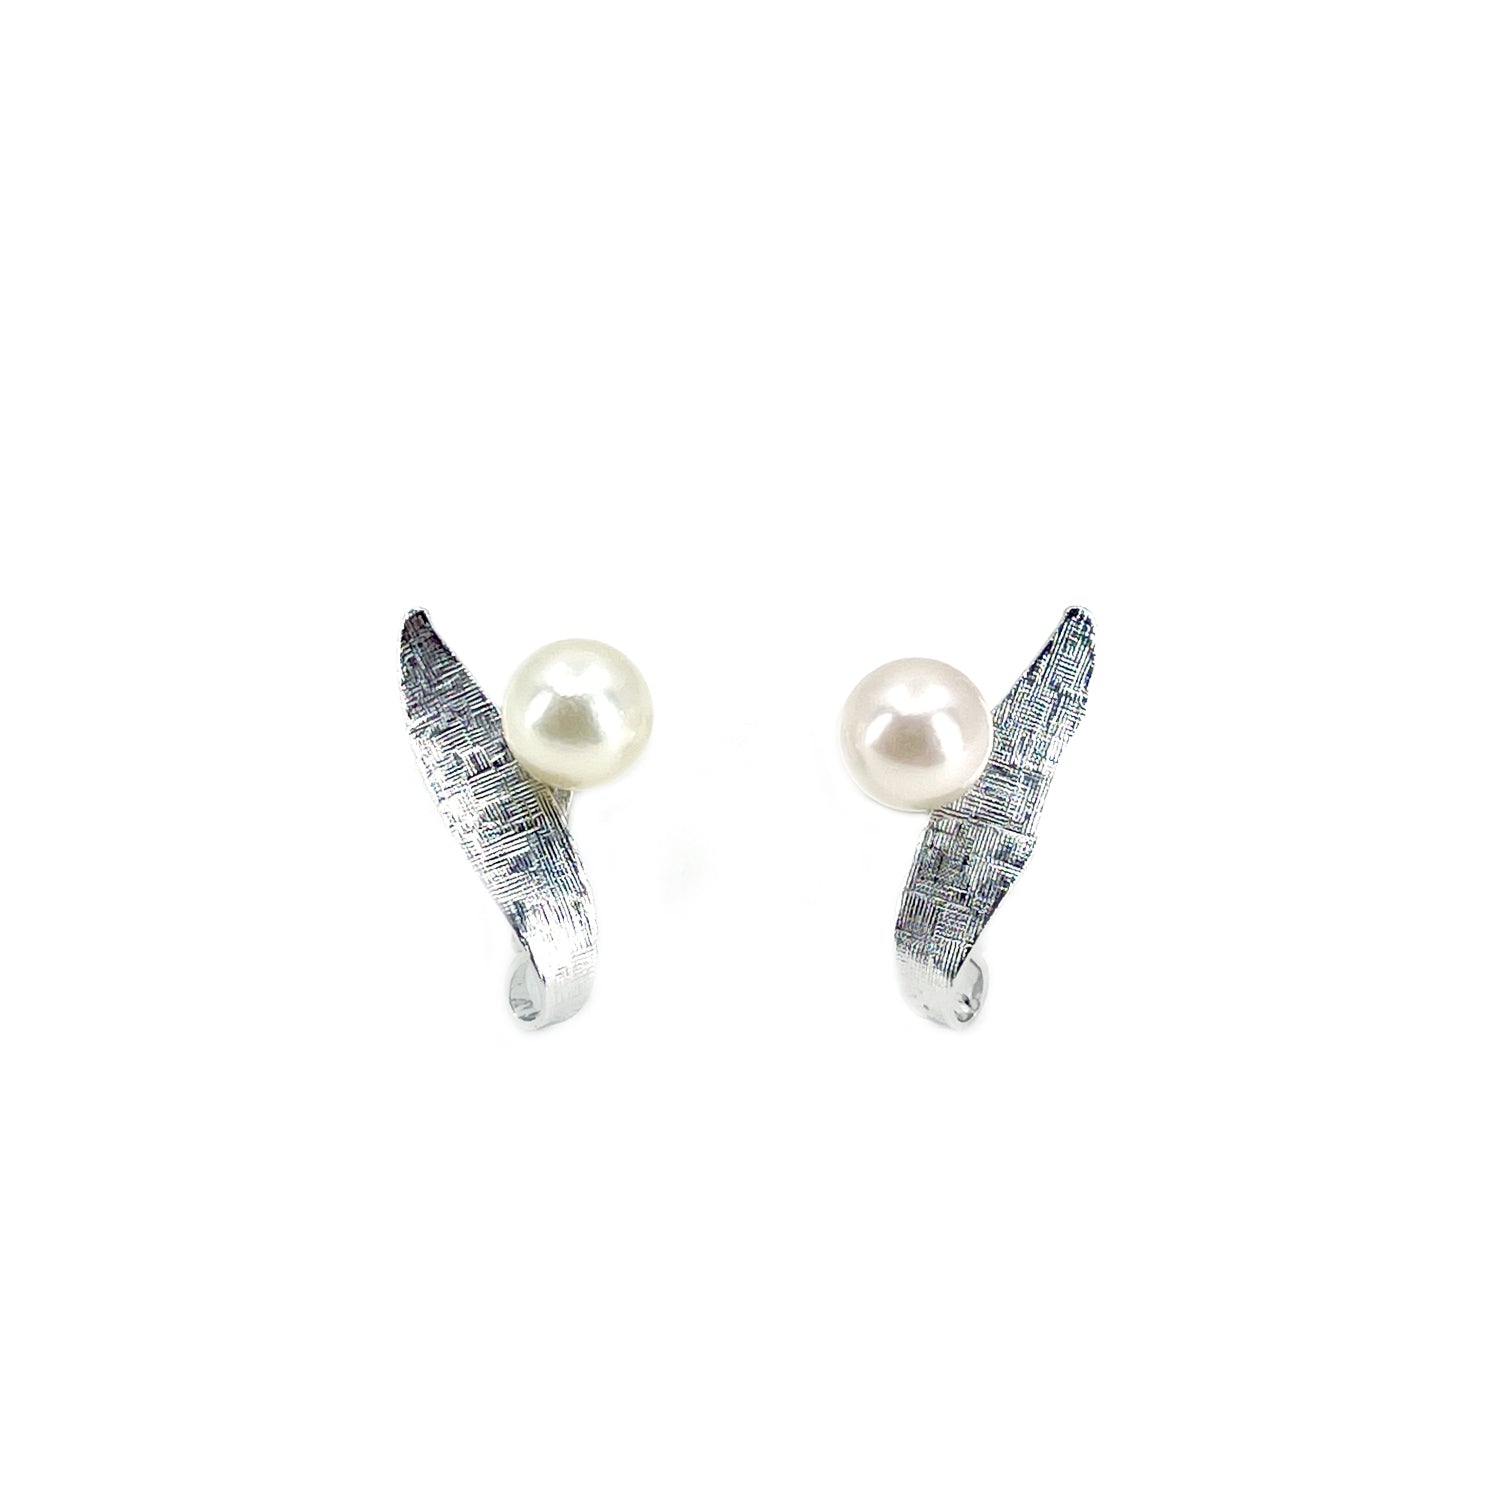 Van Dell Designer Akoya Saltwater Cultured Pearl Vintage Screwback Earrings- Sterling Silver